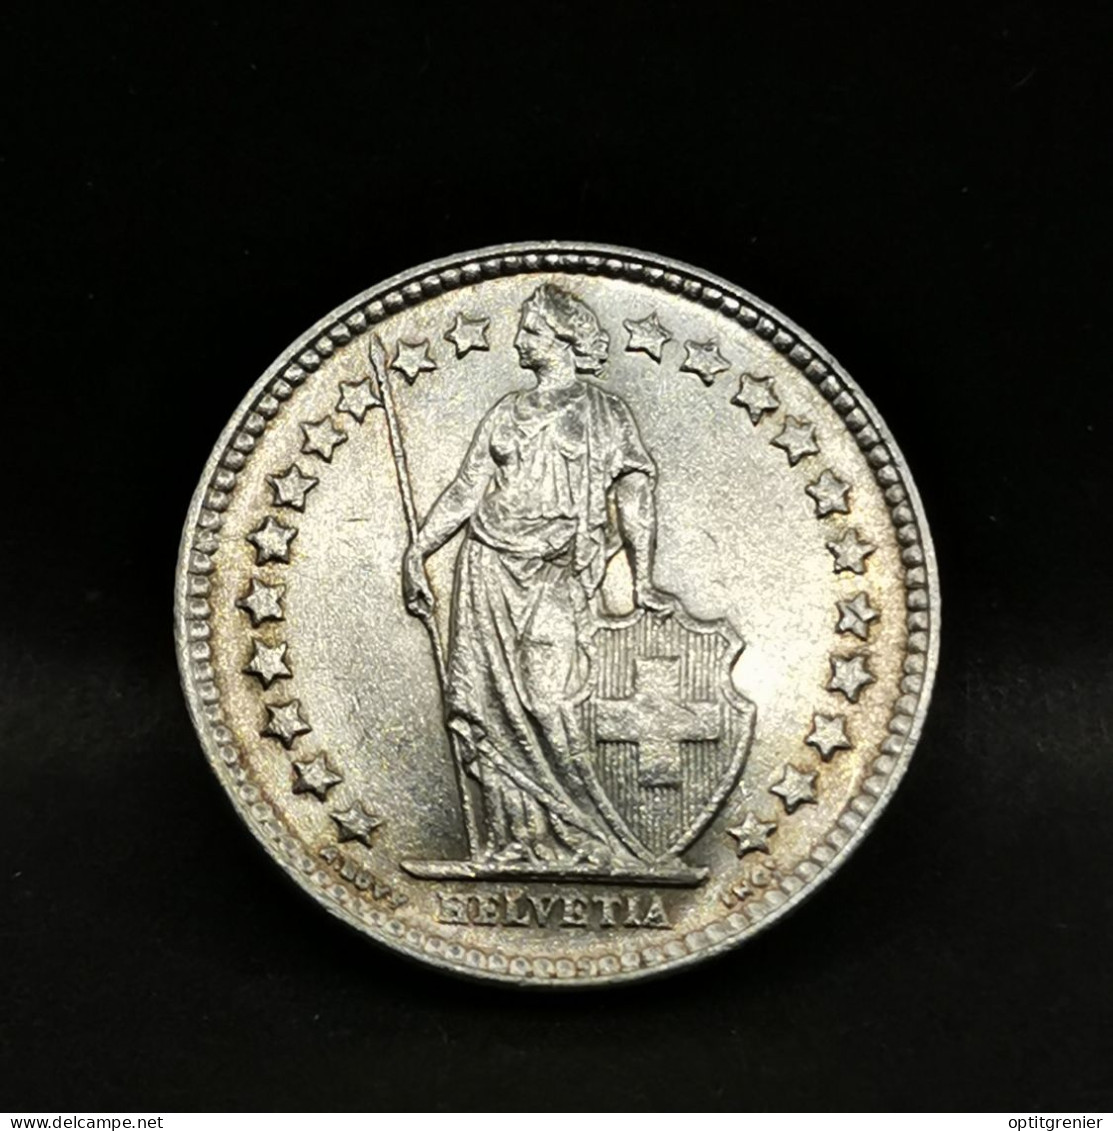 1/2 FRANC ARGENT 1952 B BERNE HELVETIA DEBOUT SUISSE / SWITZERLAND SILVER - 1/2 Franc